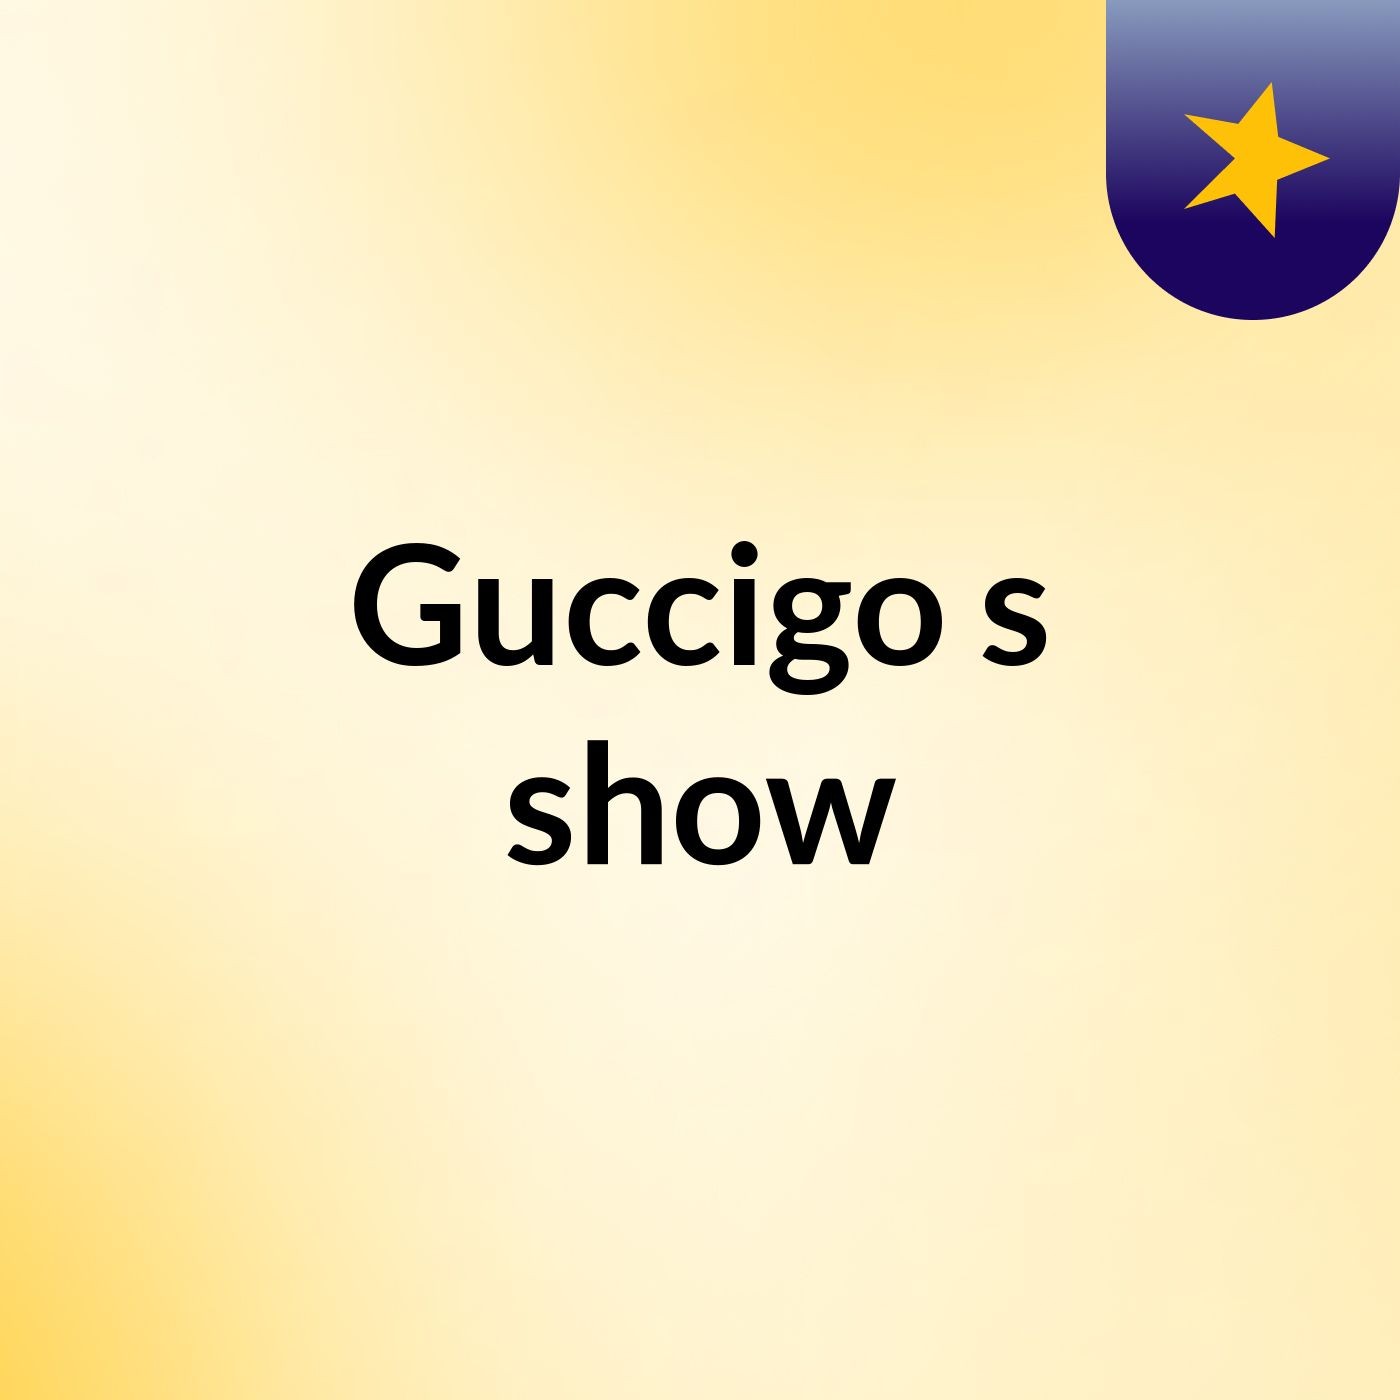 Guccigo's show